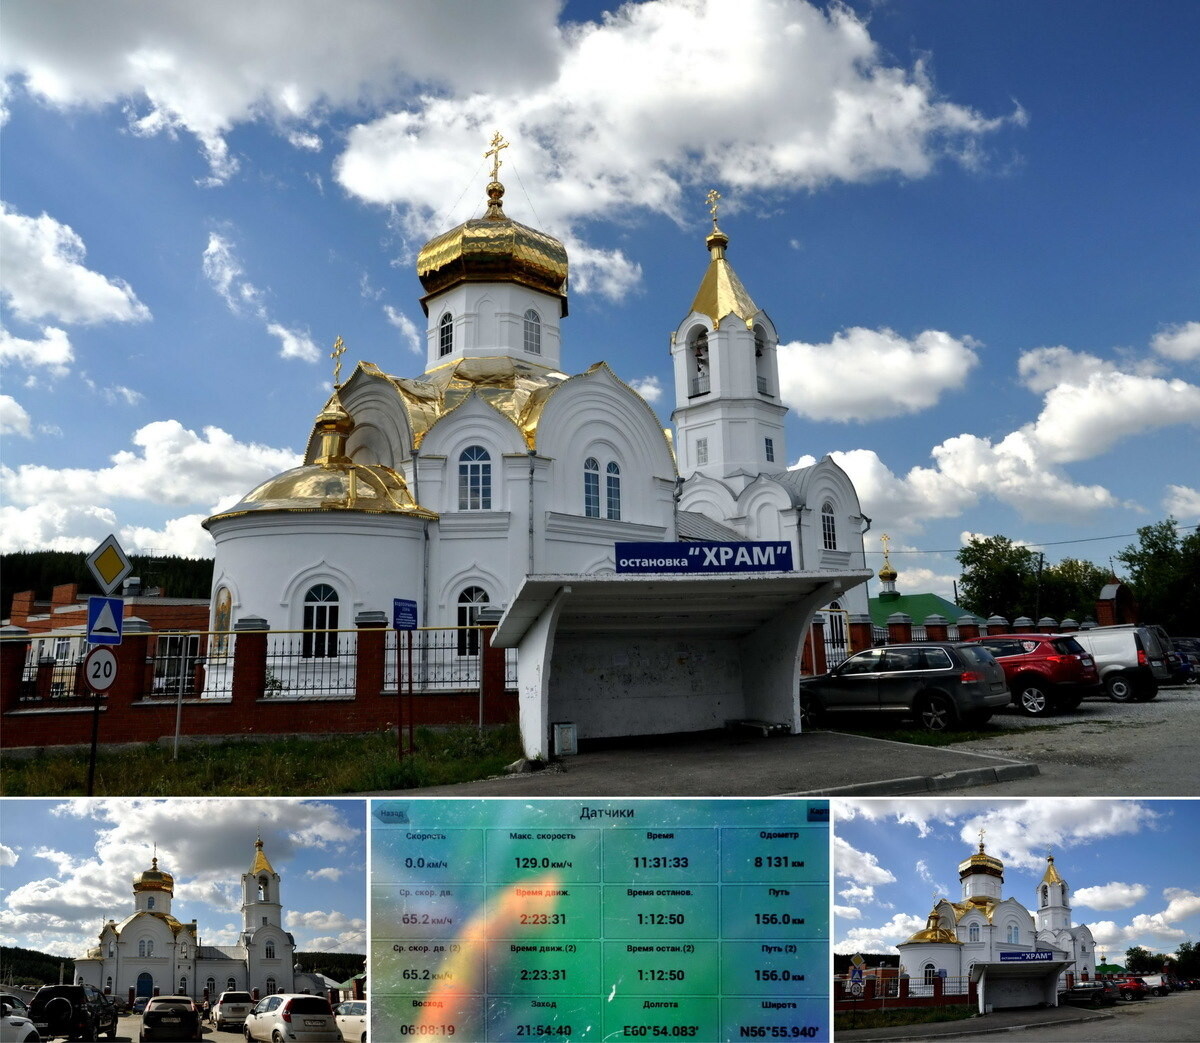 Старопышминский храм Старопышминск Свердловская область